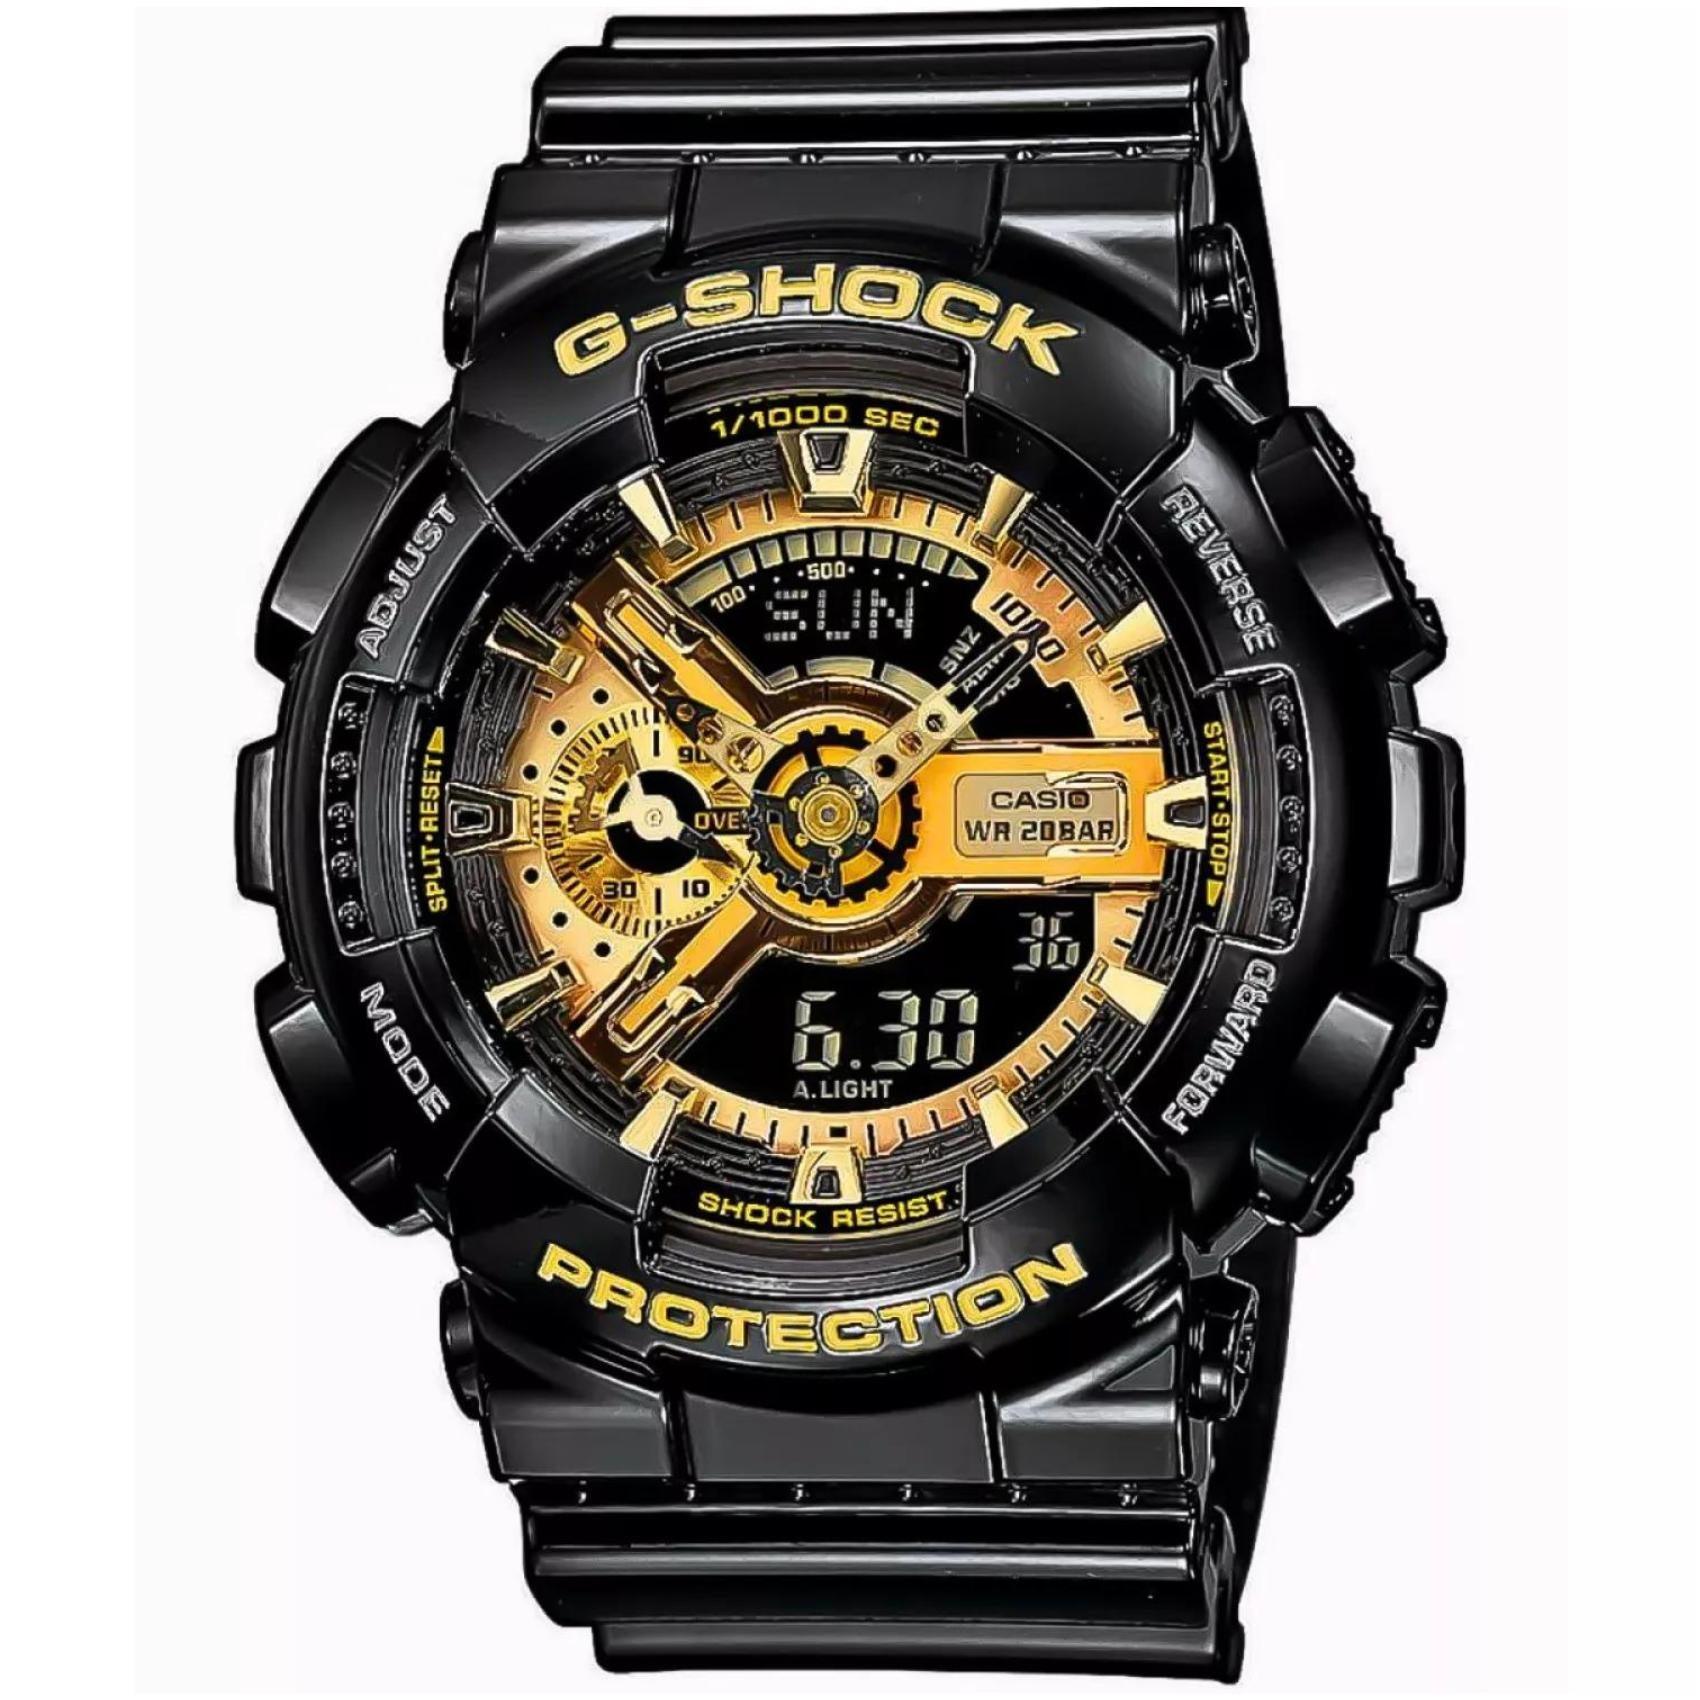 Ρολόι χρονογράφος Casio G-Shock GA-110GB-1AER που συνδυάζει μαύρο καουτσούκ λουράκι και μαύρο καντράν μεγέθους 51mm.